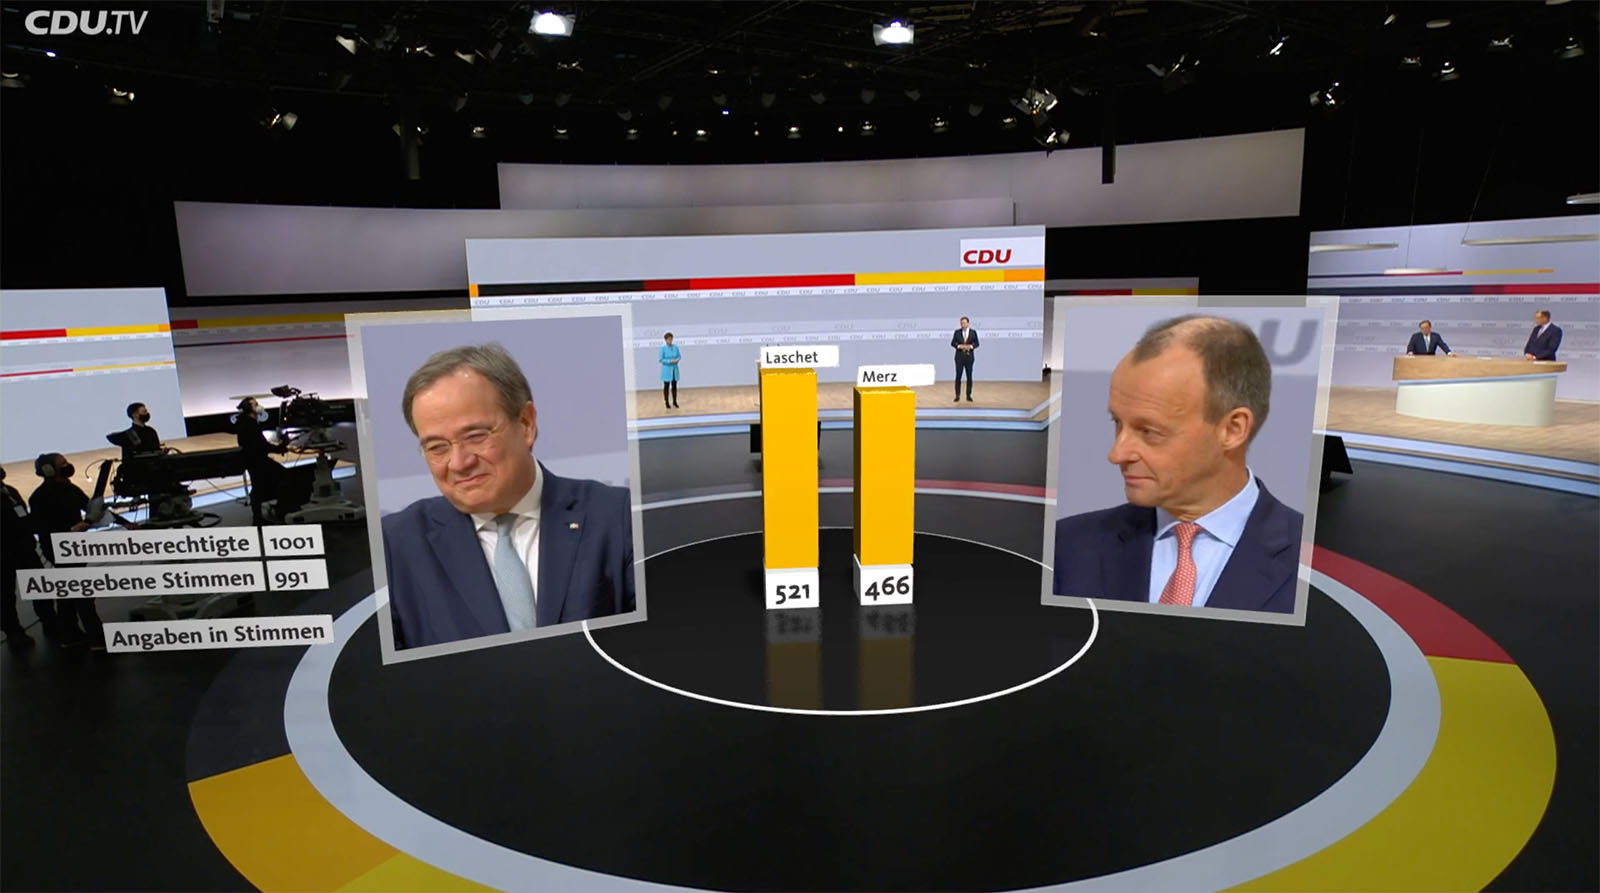 CDU-德國-基督教民主聯盟-擴增實境-遠距-視訊會議-線上選舉-疫情